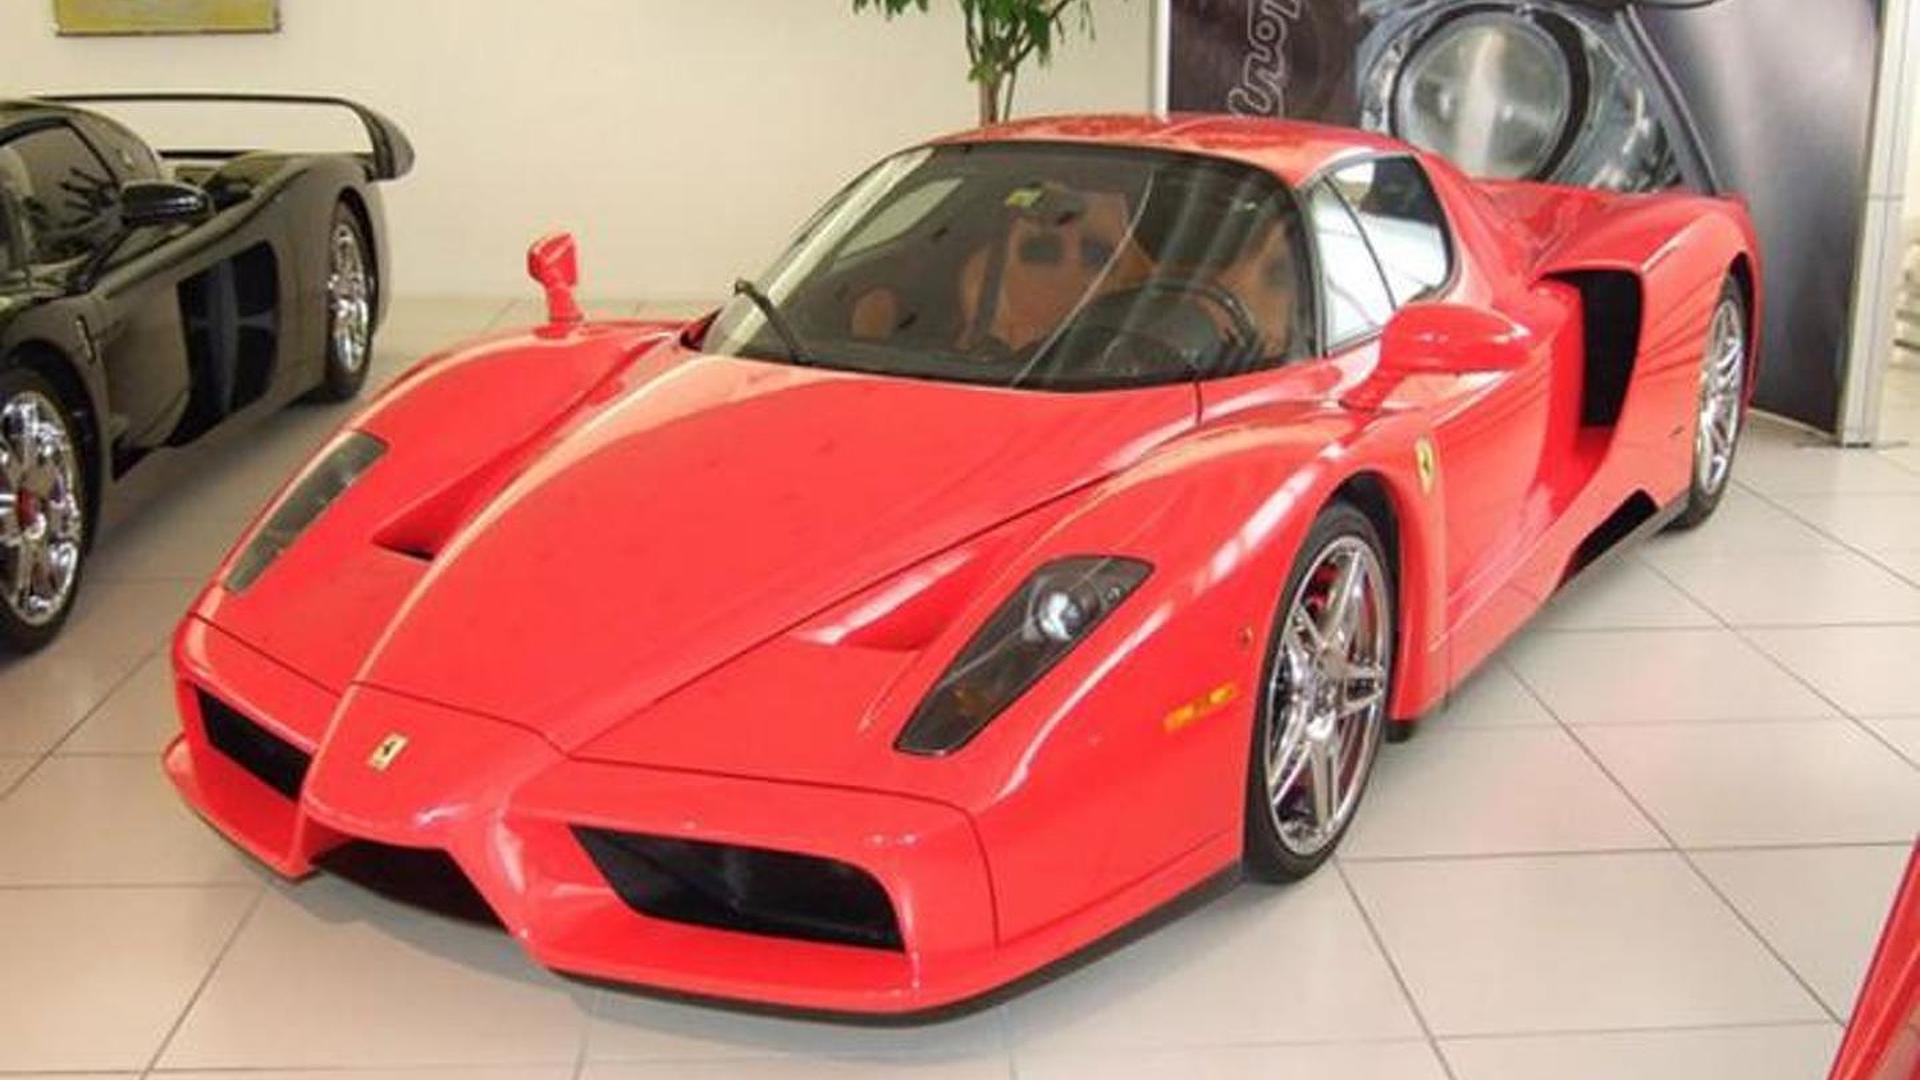 Ferrari Enzo Михаэля Шумахера опять выставили на продажу